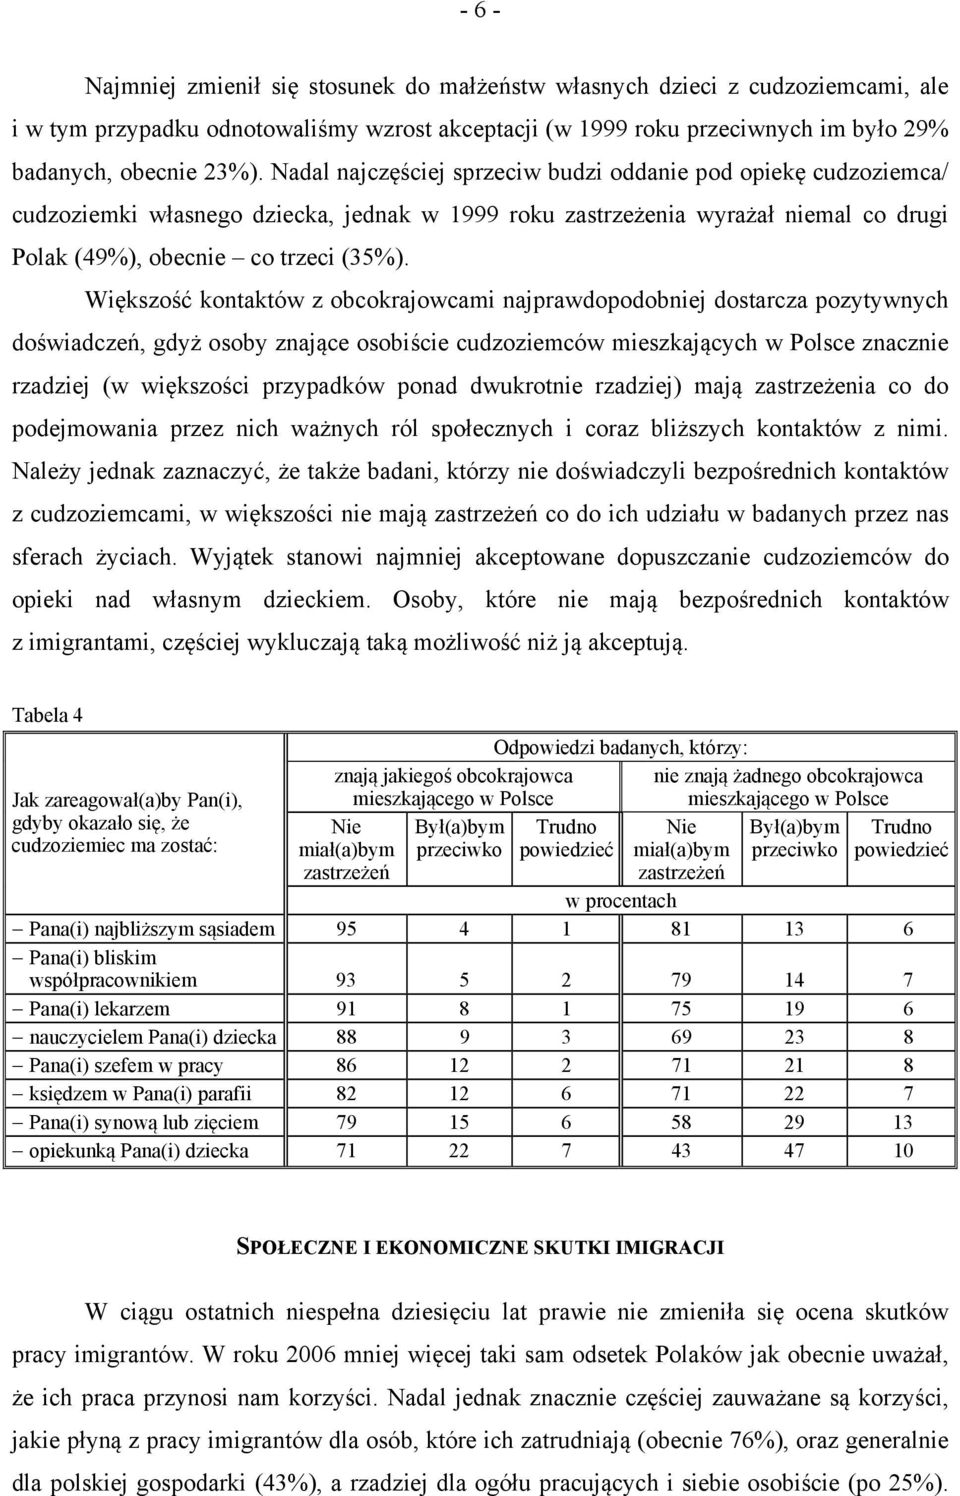 Większość kontaktów z obcokrajowcami najprawdopodobniej dostarcza pozytywnych doświadczeń, gdyż osoby znające osobiście cudzoziemców mieszkających w Polsce znacznie rzadziej (w większości przypadków